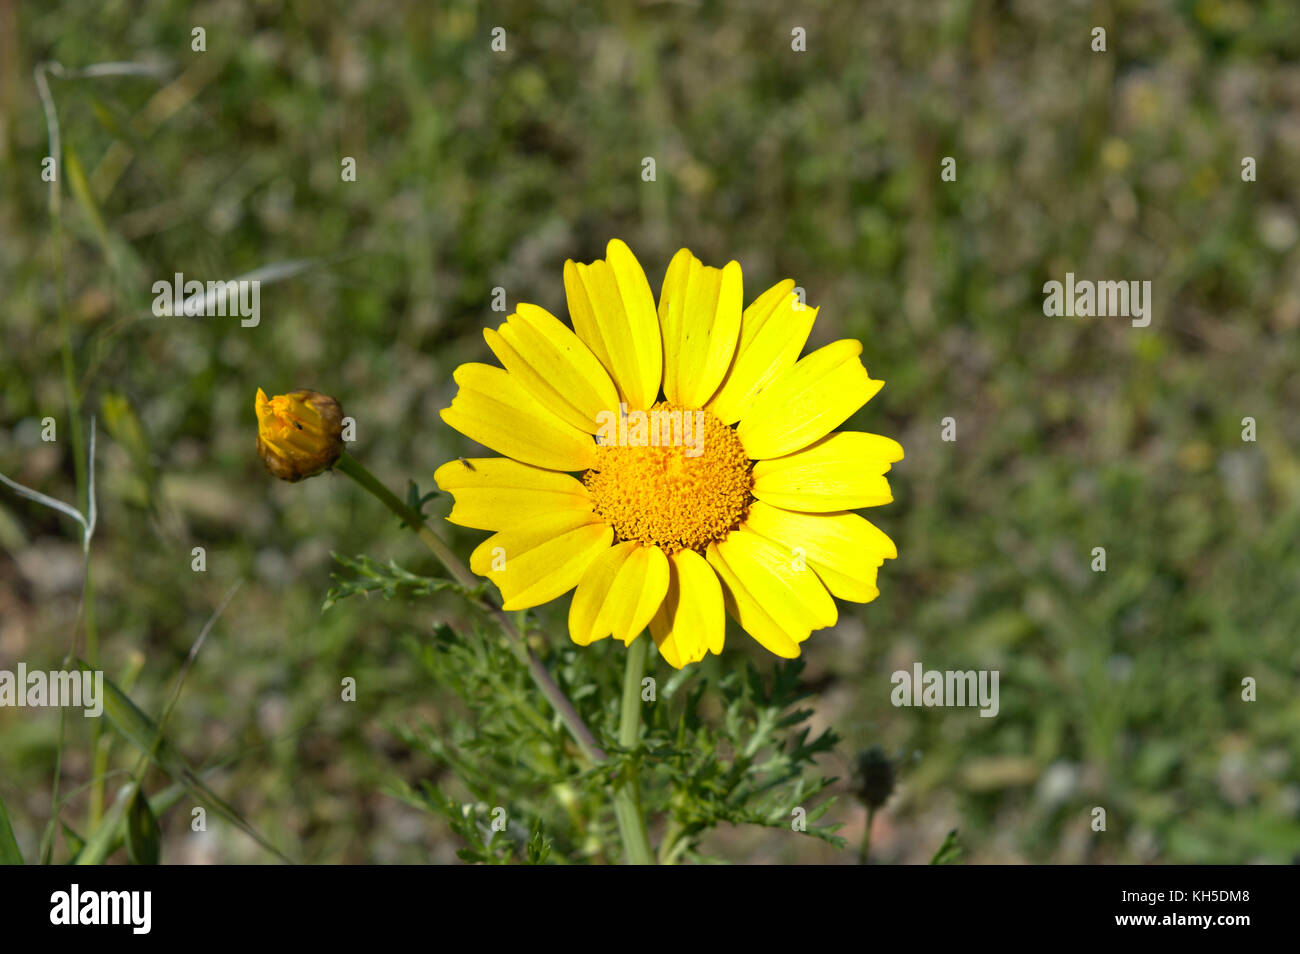 Daisy amarilla sobre la colina philopappos, Atenas, Attica, Grecia Foto de stock